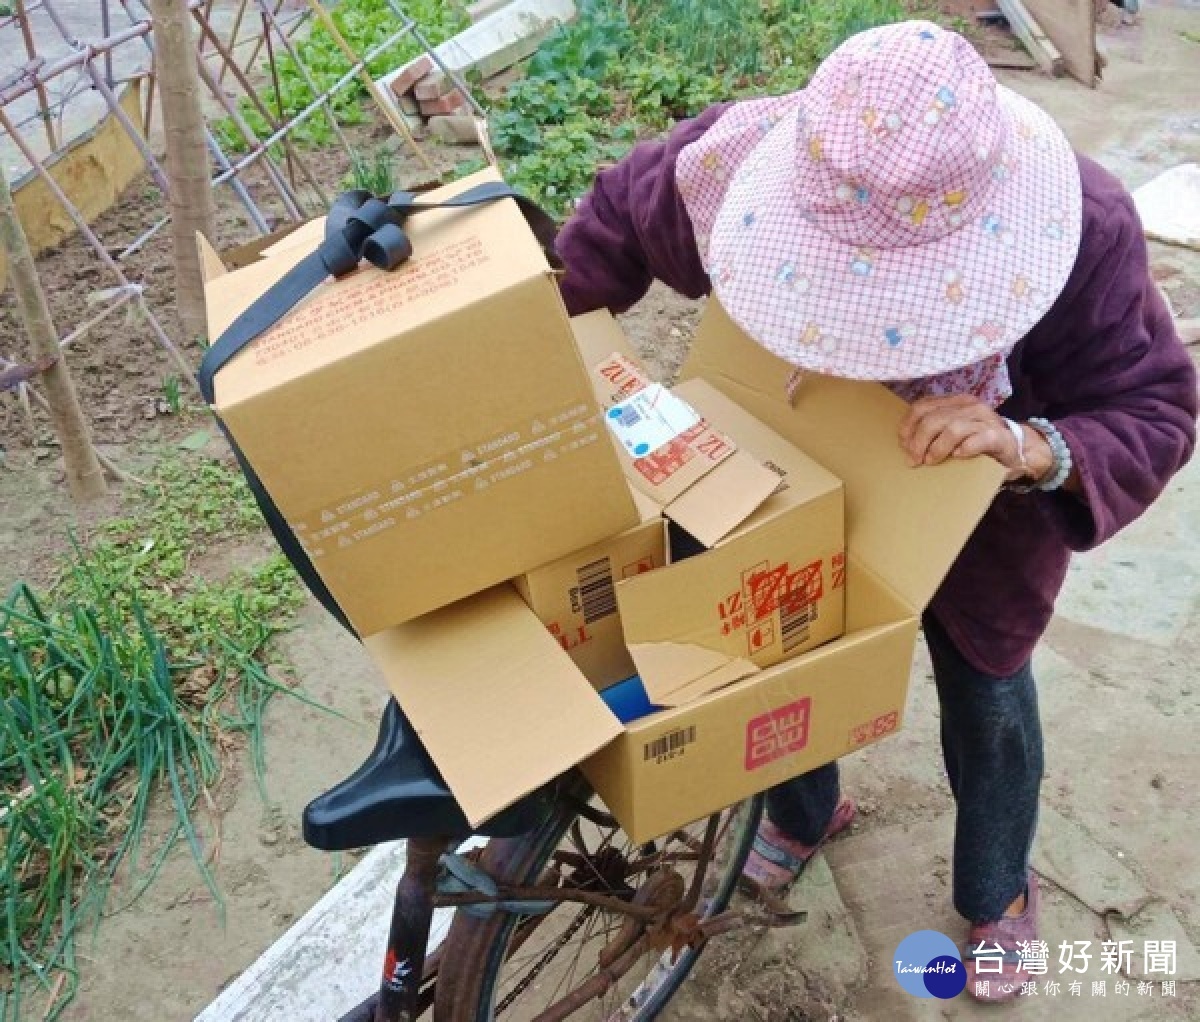 口湖所警員王瑄真巡勤時見老婦衣著單薄，在凜冽寒風中整理回收物，主動予以協助並載送返家，獲社區民眾大讚「女警人美心更美」。